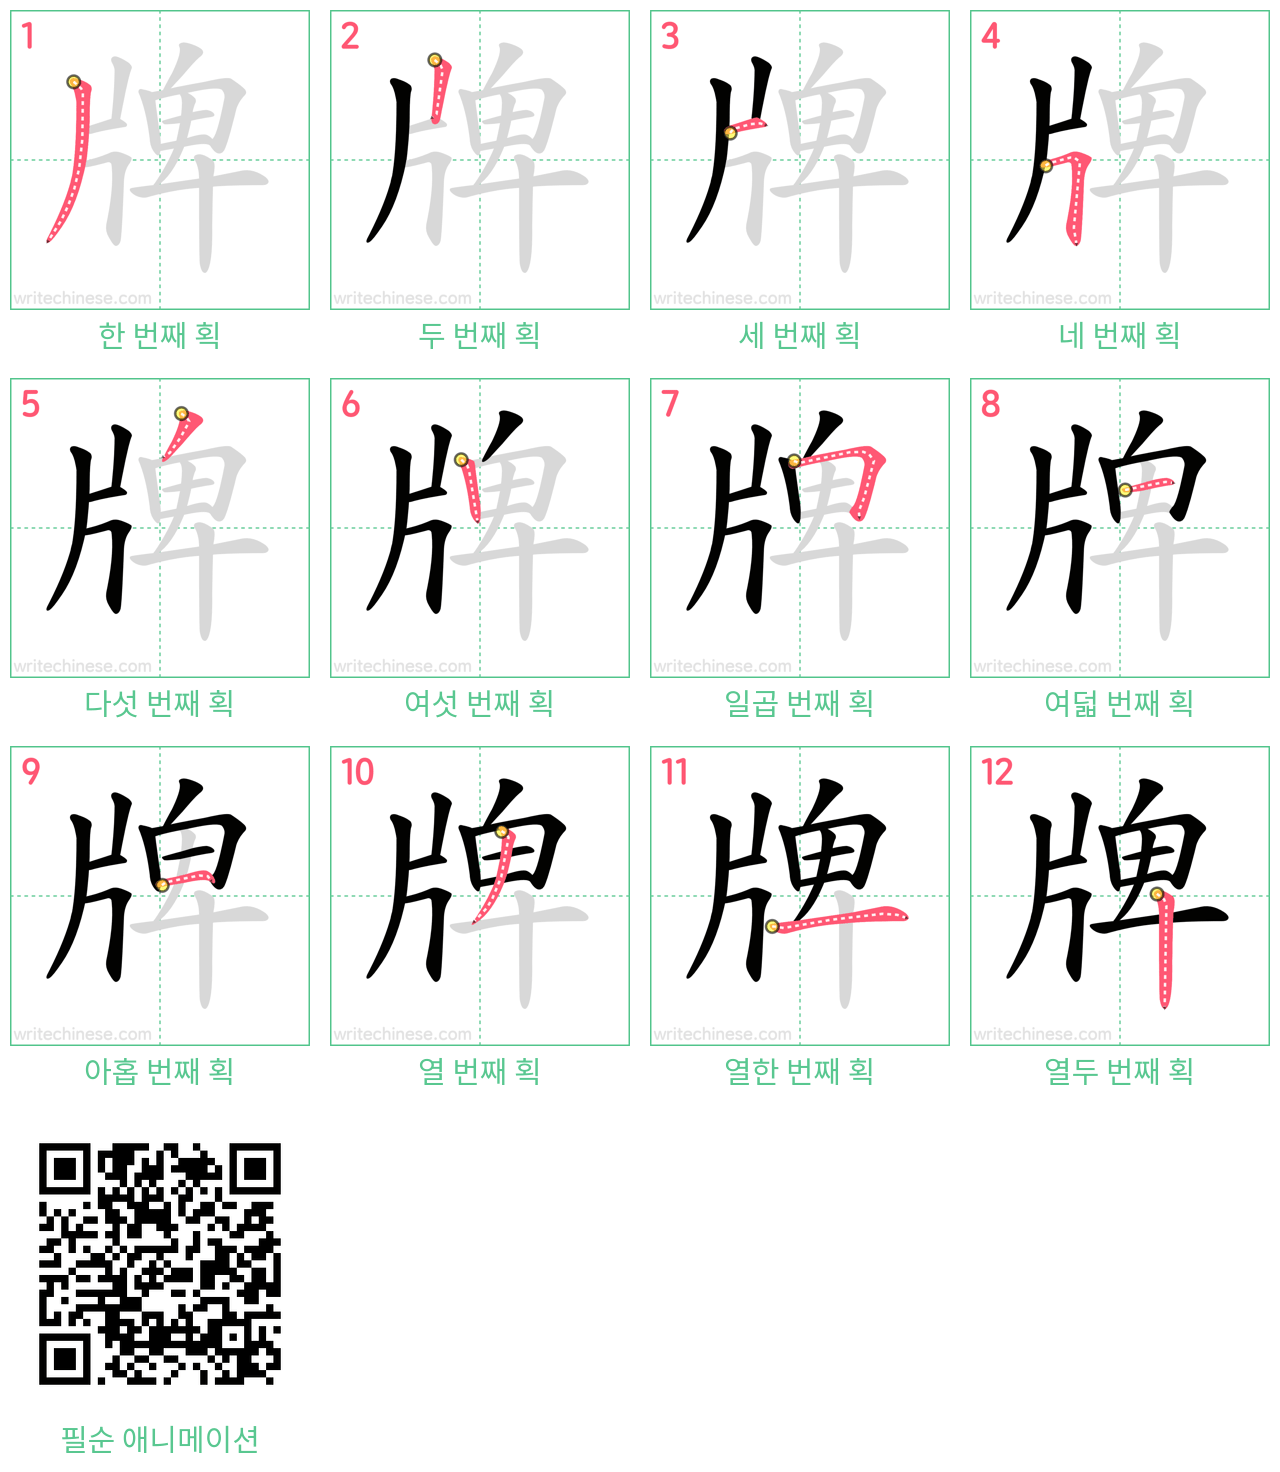 牌 step-by-step stroke order diagrams